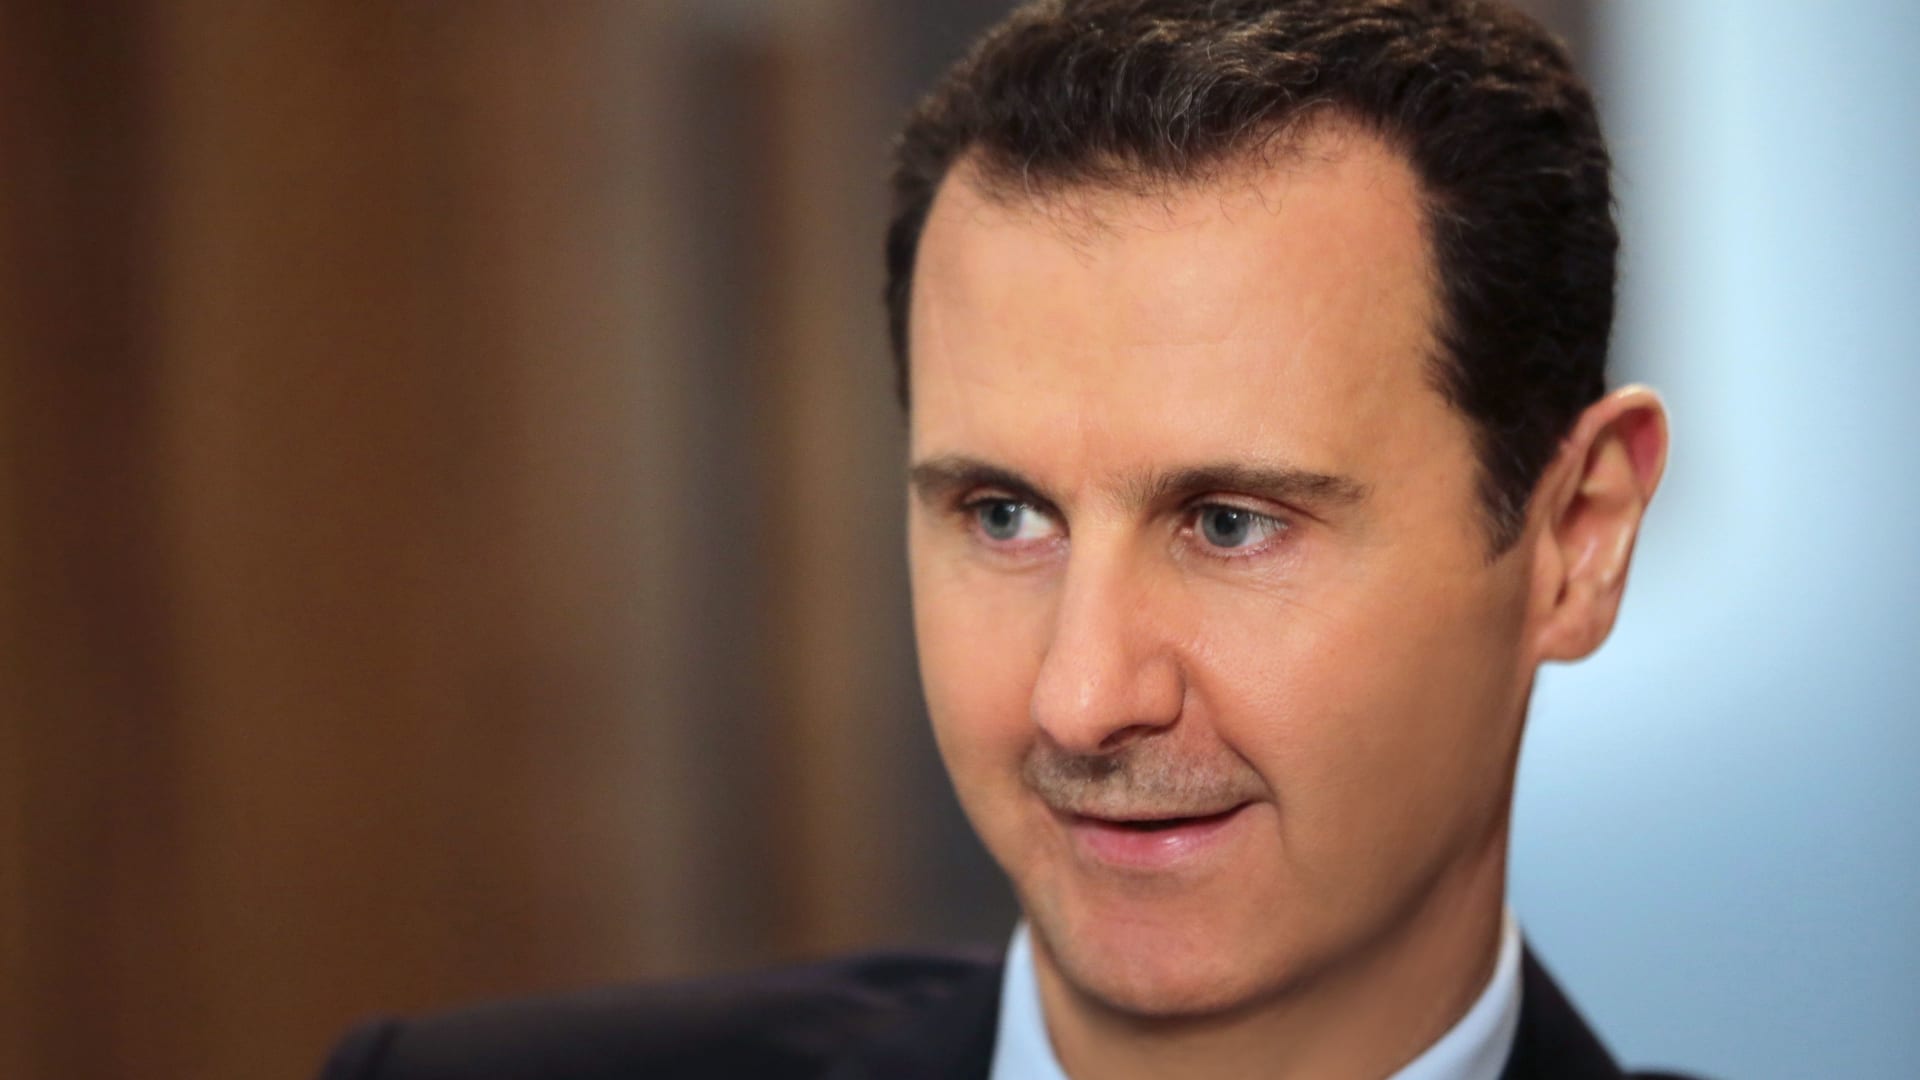 كارتر لـCNN: يجب منح الأسد فرصة للسلام ثم التعامل مع جرائمه